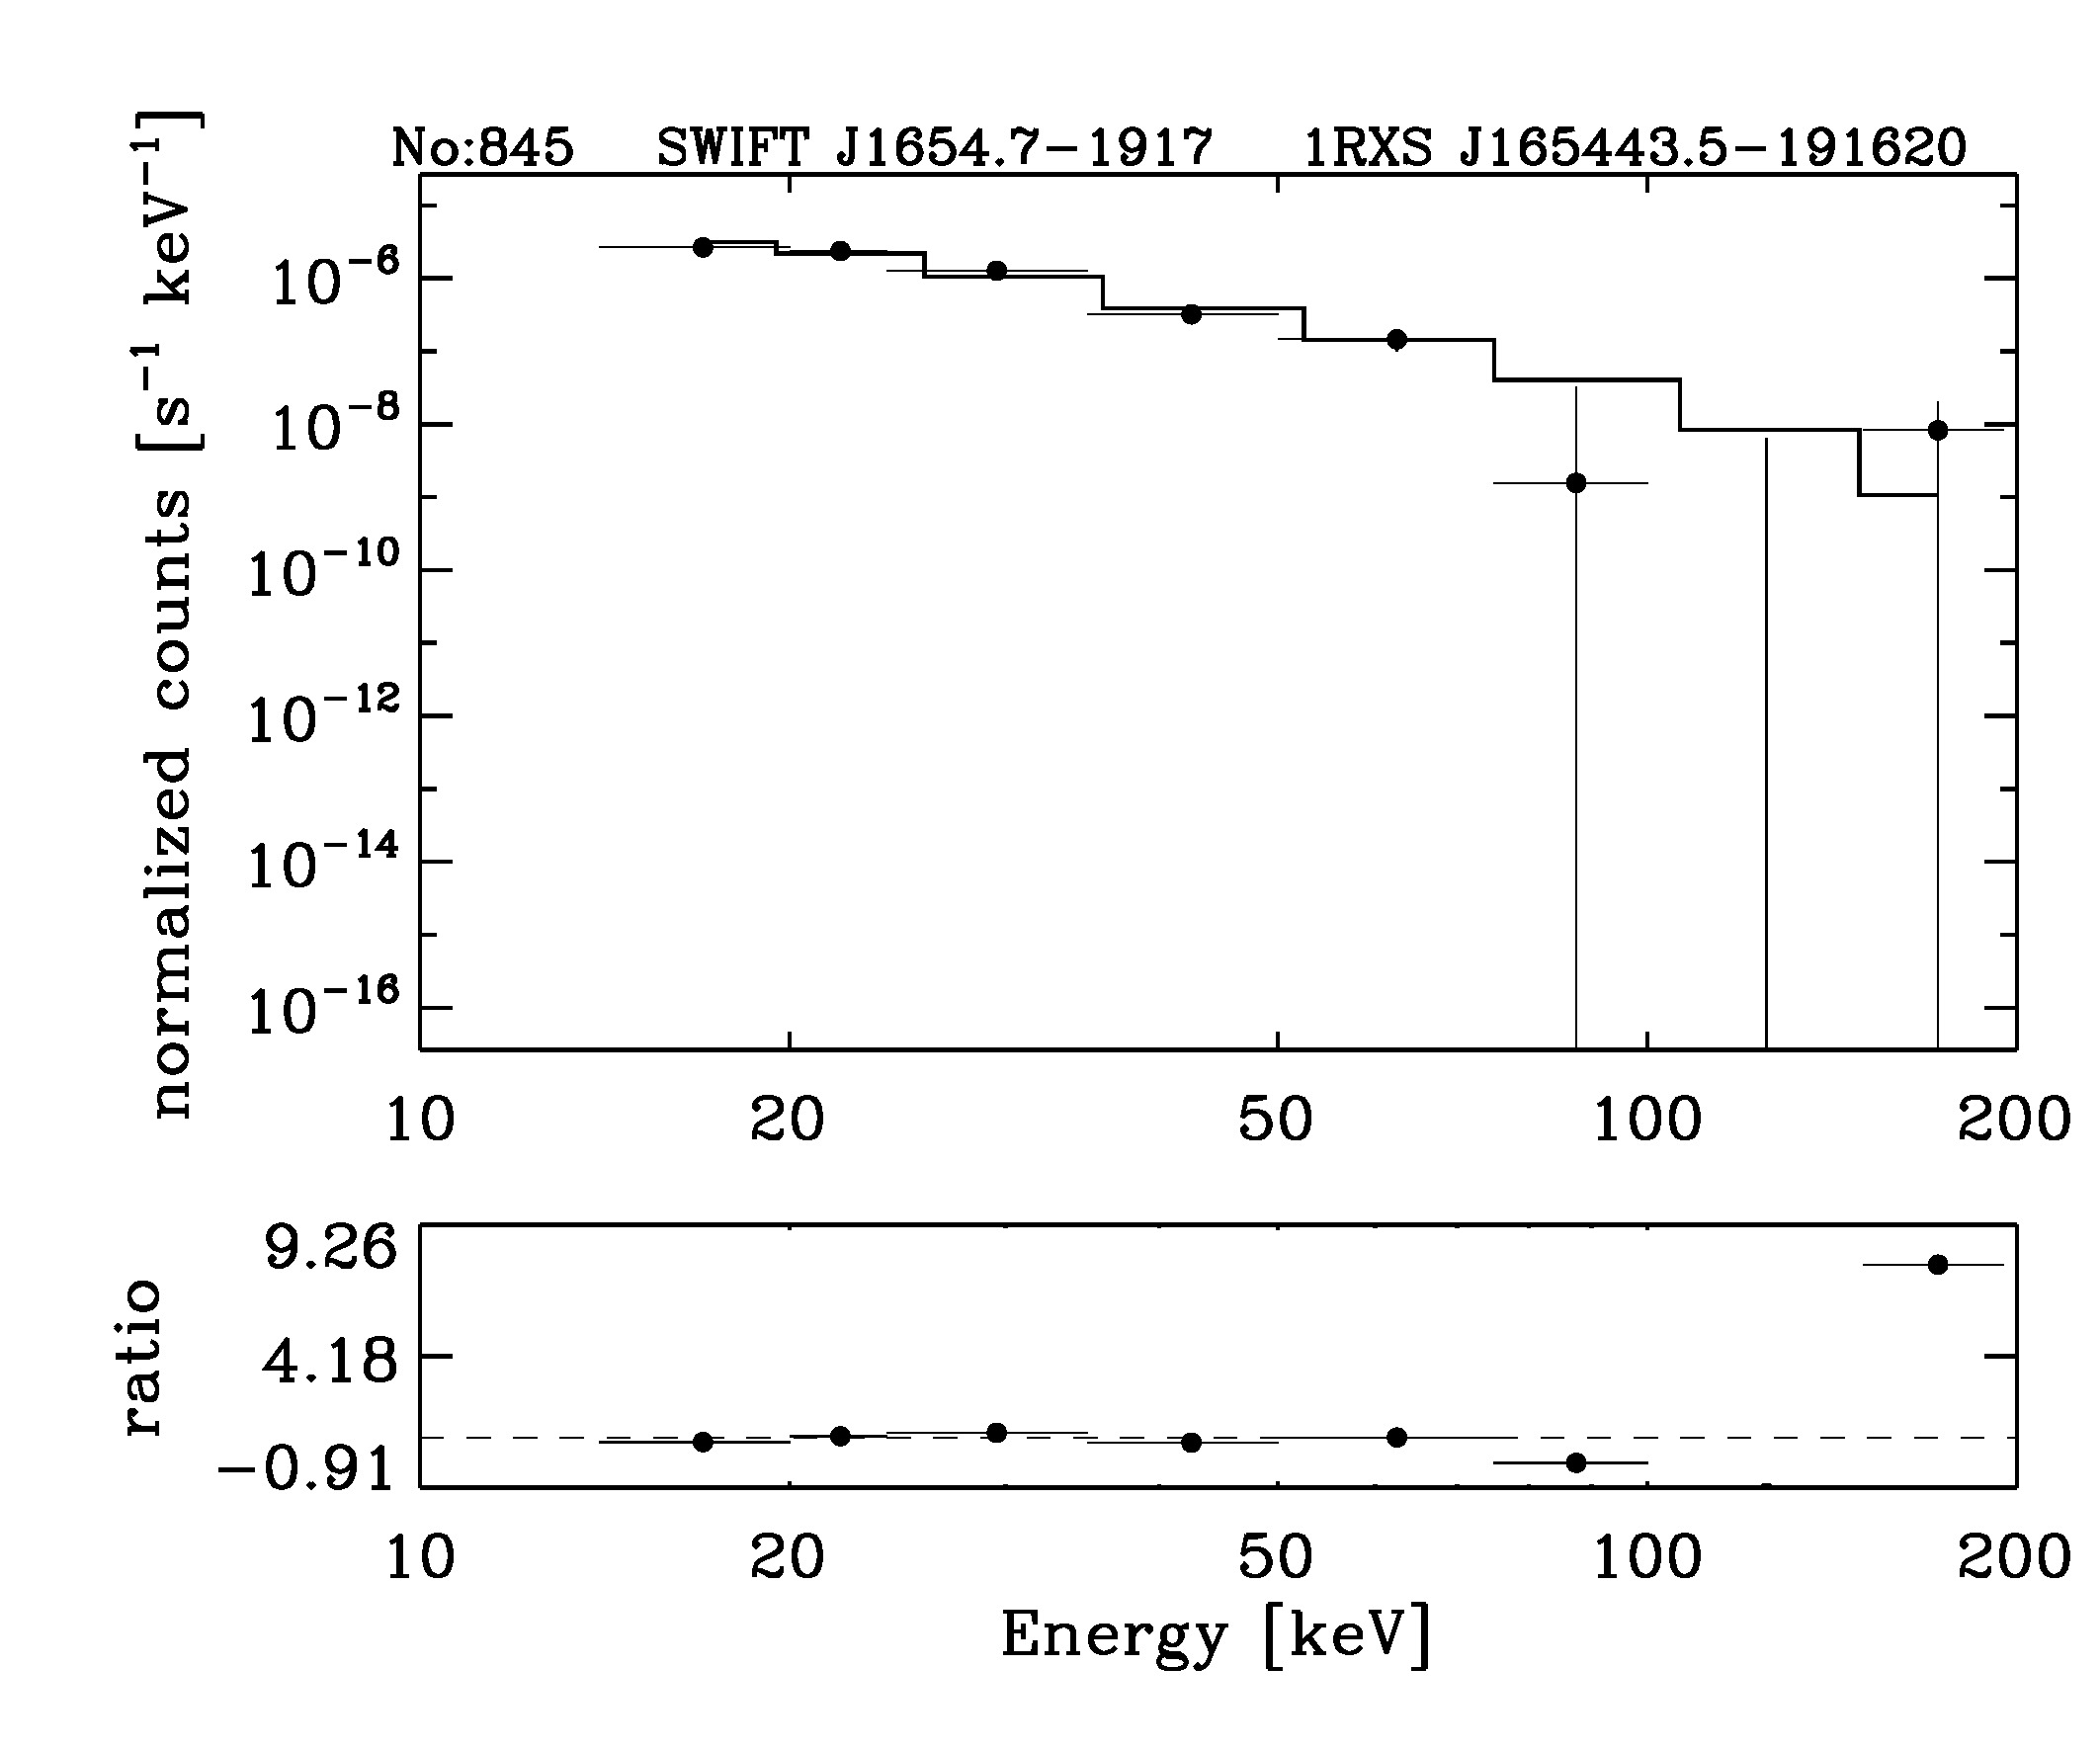 BAT Spectrum for SWIFT J1654.7-1917